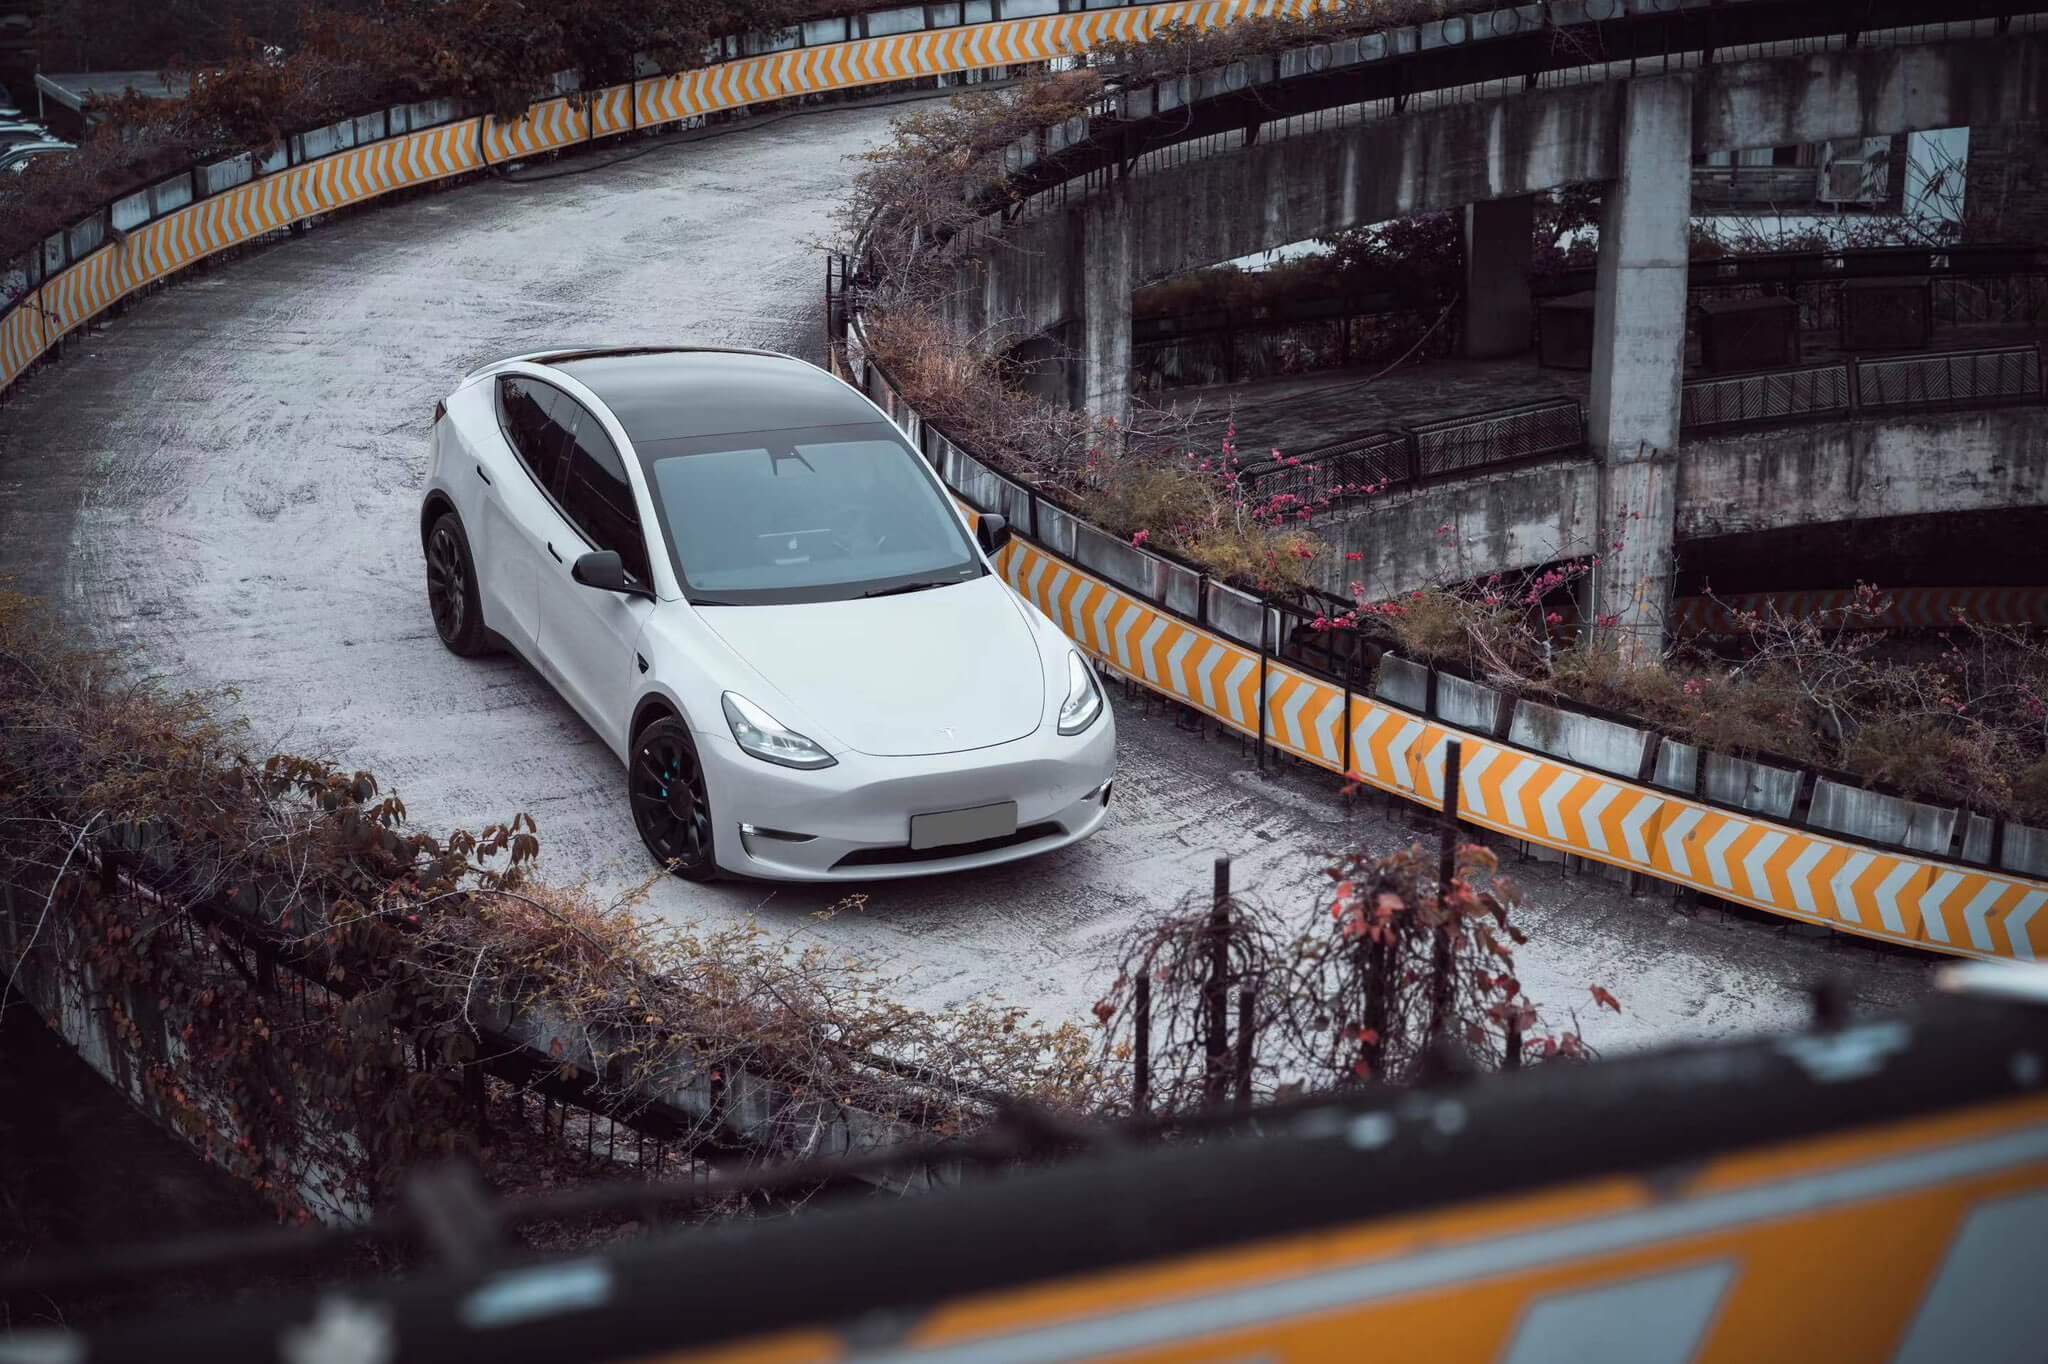 La demanda de Tesla en China crece tras los recortes de precios